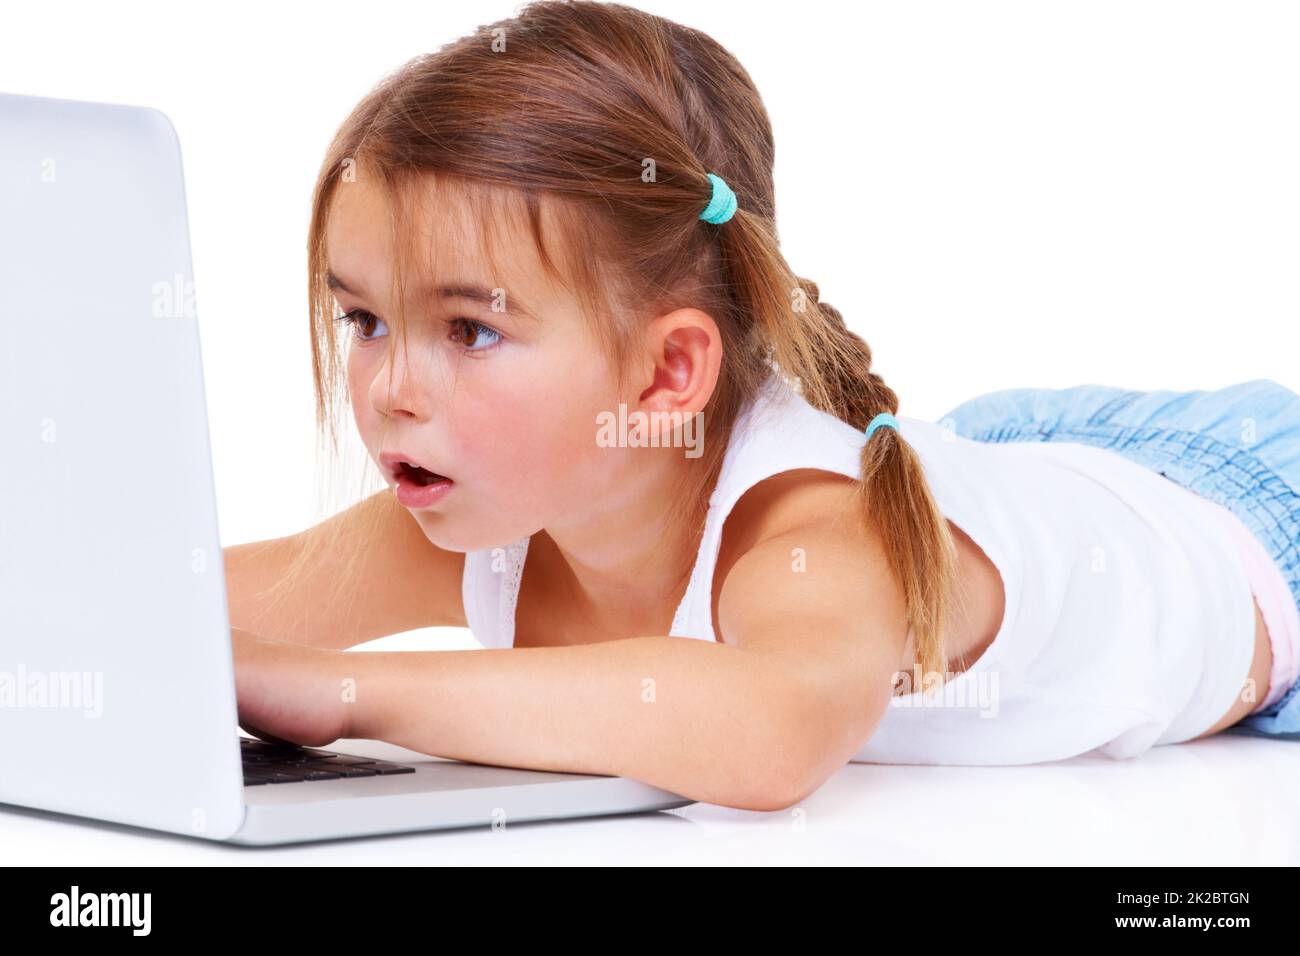 Le cyberespace est un grand endroit pour une petite fille. Une adorable petite fille qui a l'air stupéfait de s'allonger sur un ordinateur portable. Banque D'Images